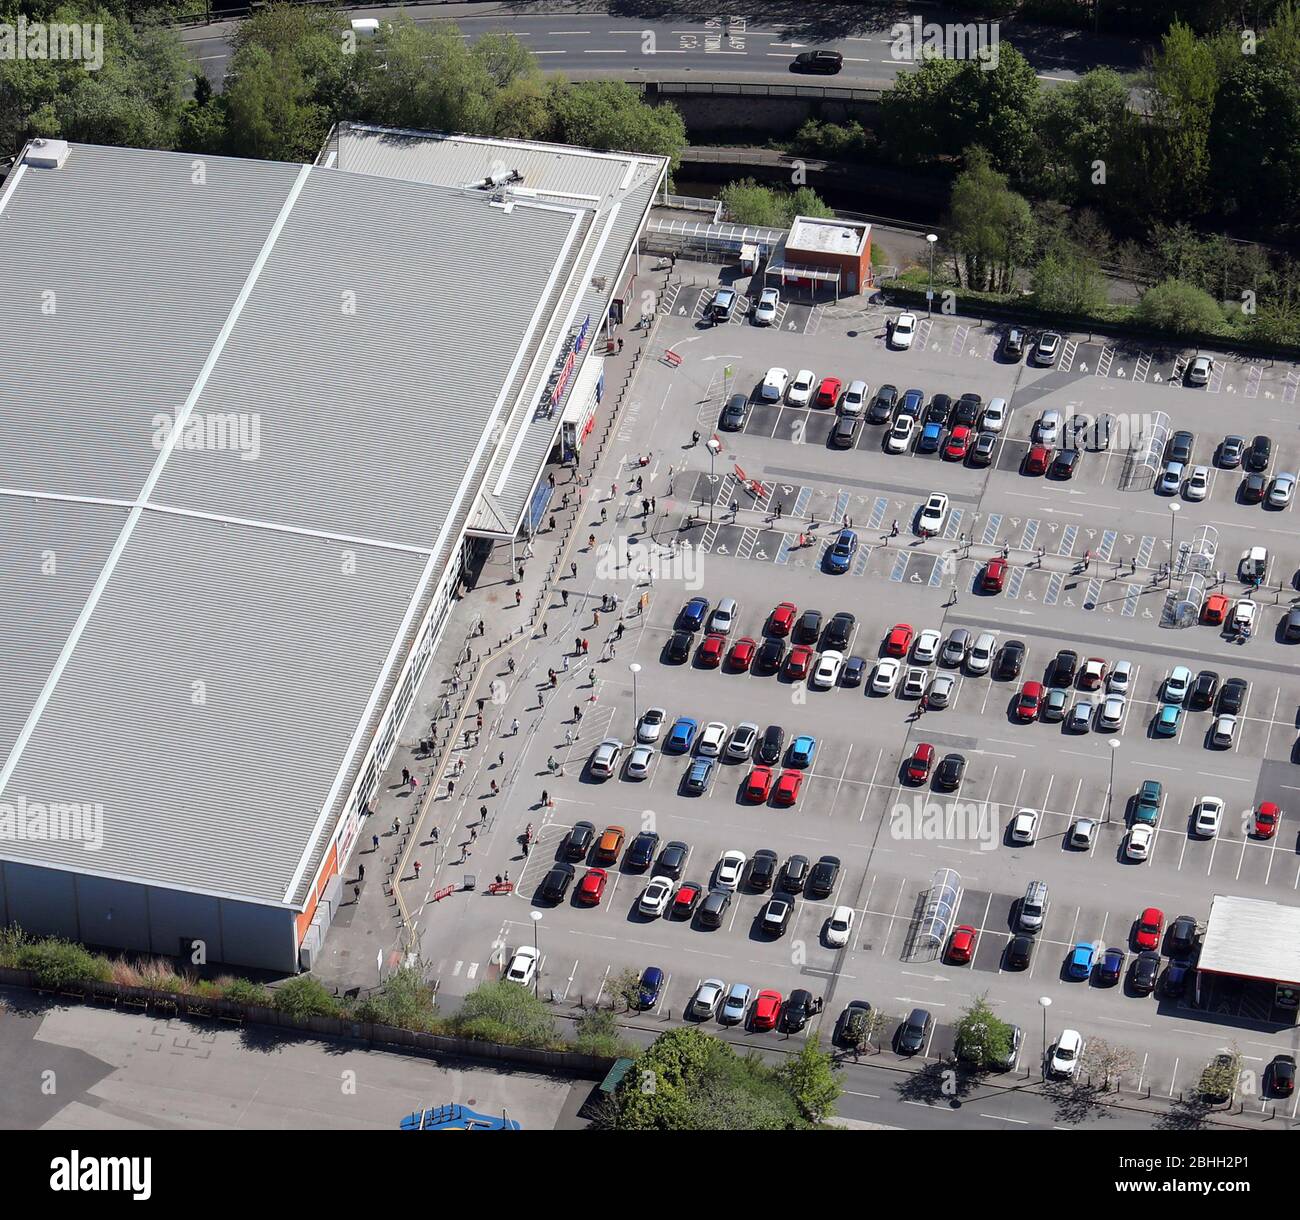 Vista aerea di un supermercato (Tesco Extra, Wigan) che mostra la coda con 2m di distanza sociale a causa della pandemia Covid-19 Foto Stock